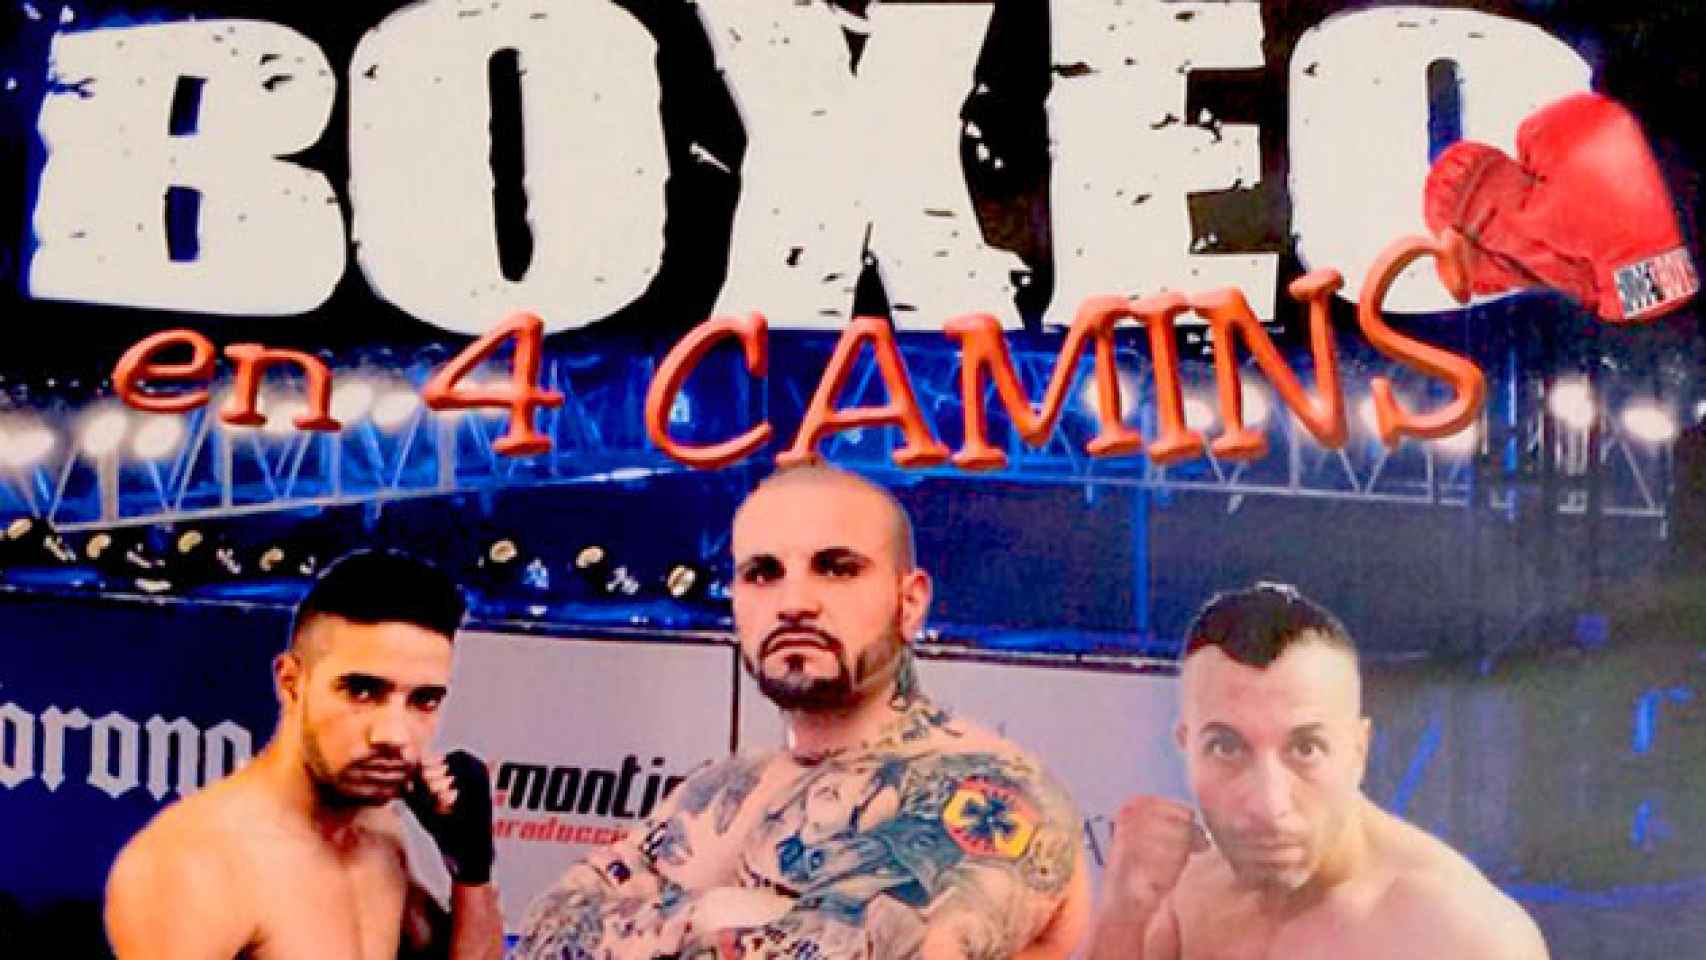 Cartel que anuncia el combate de boxeo en la cárcel de Quatre Camins / CG